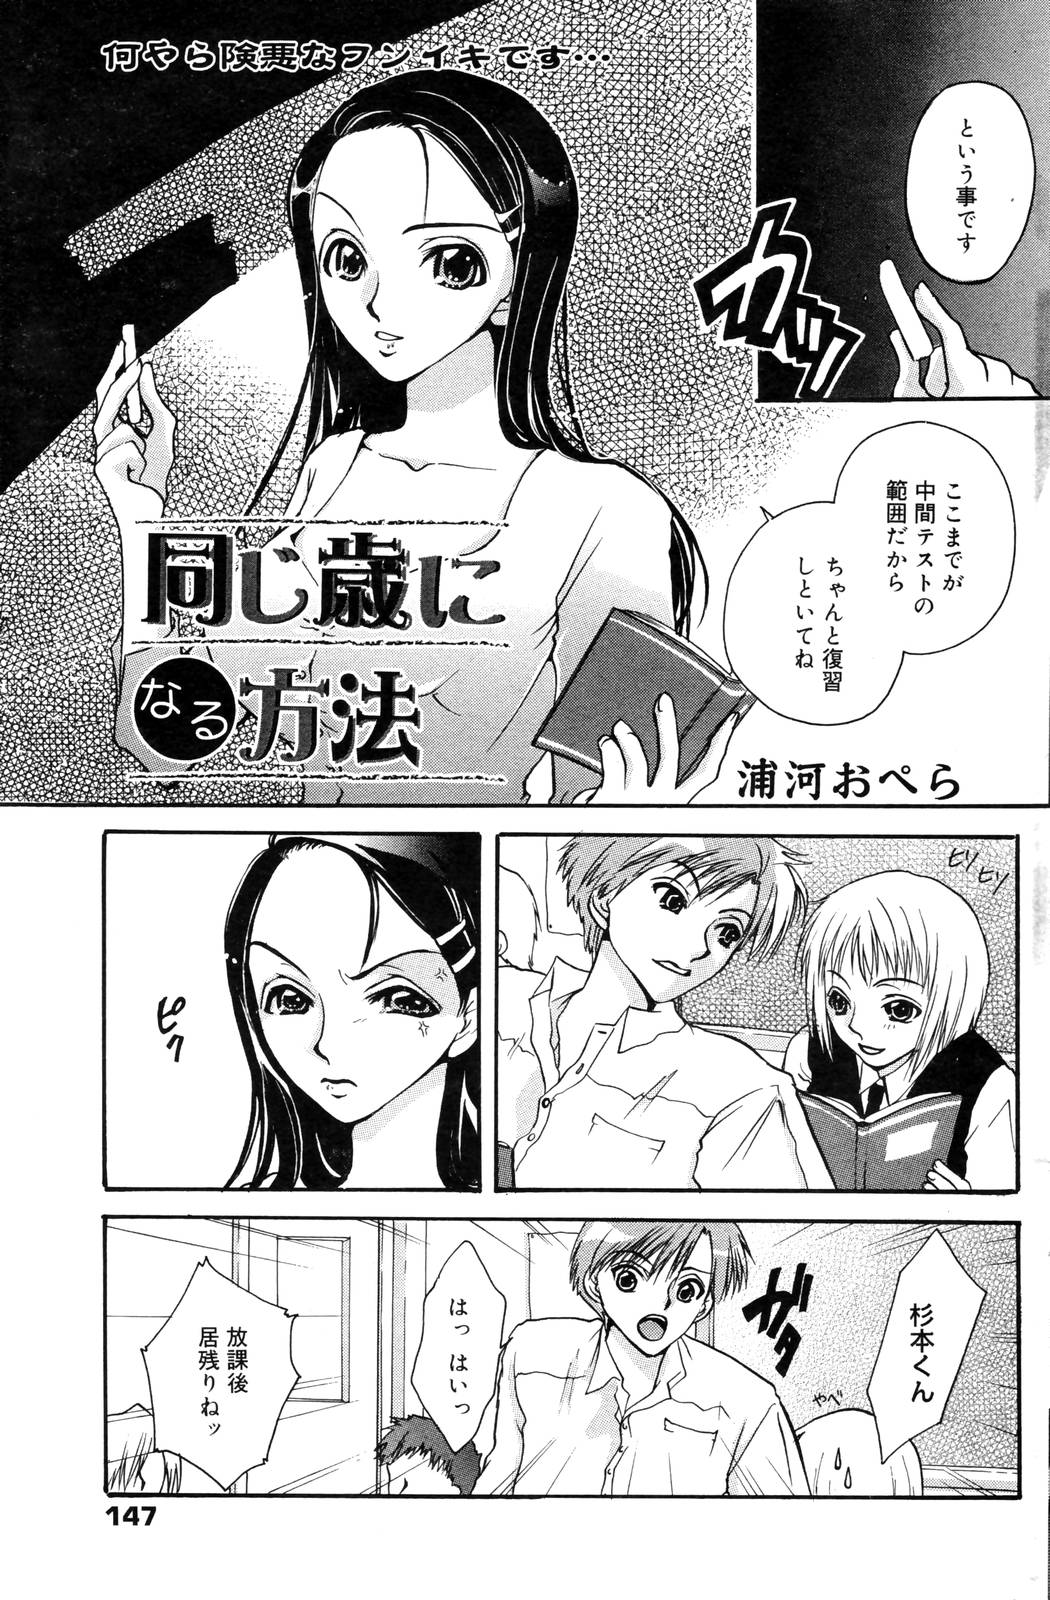 漫画ばんがいち 2006年12月号 VOL.201